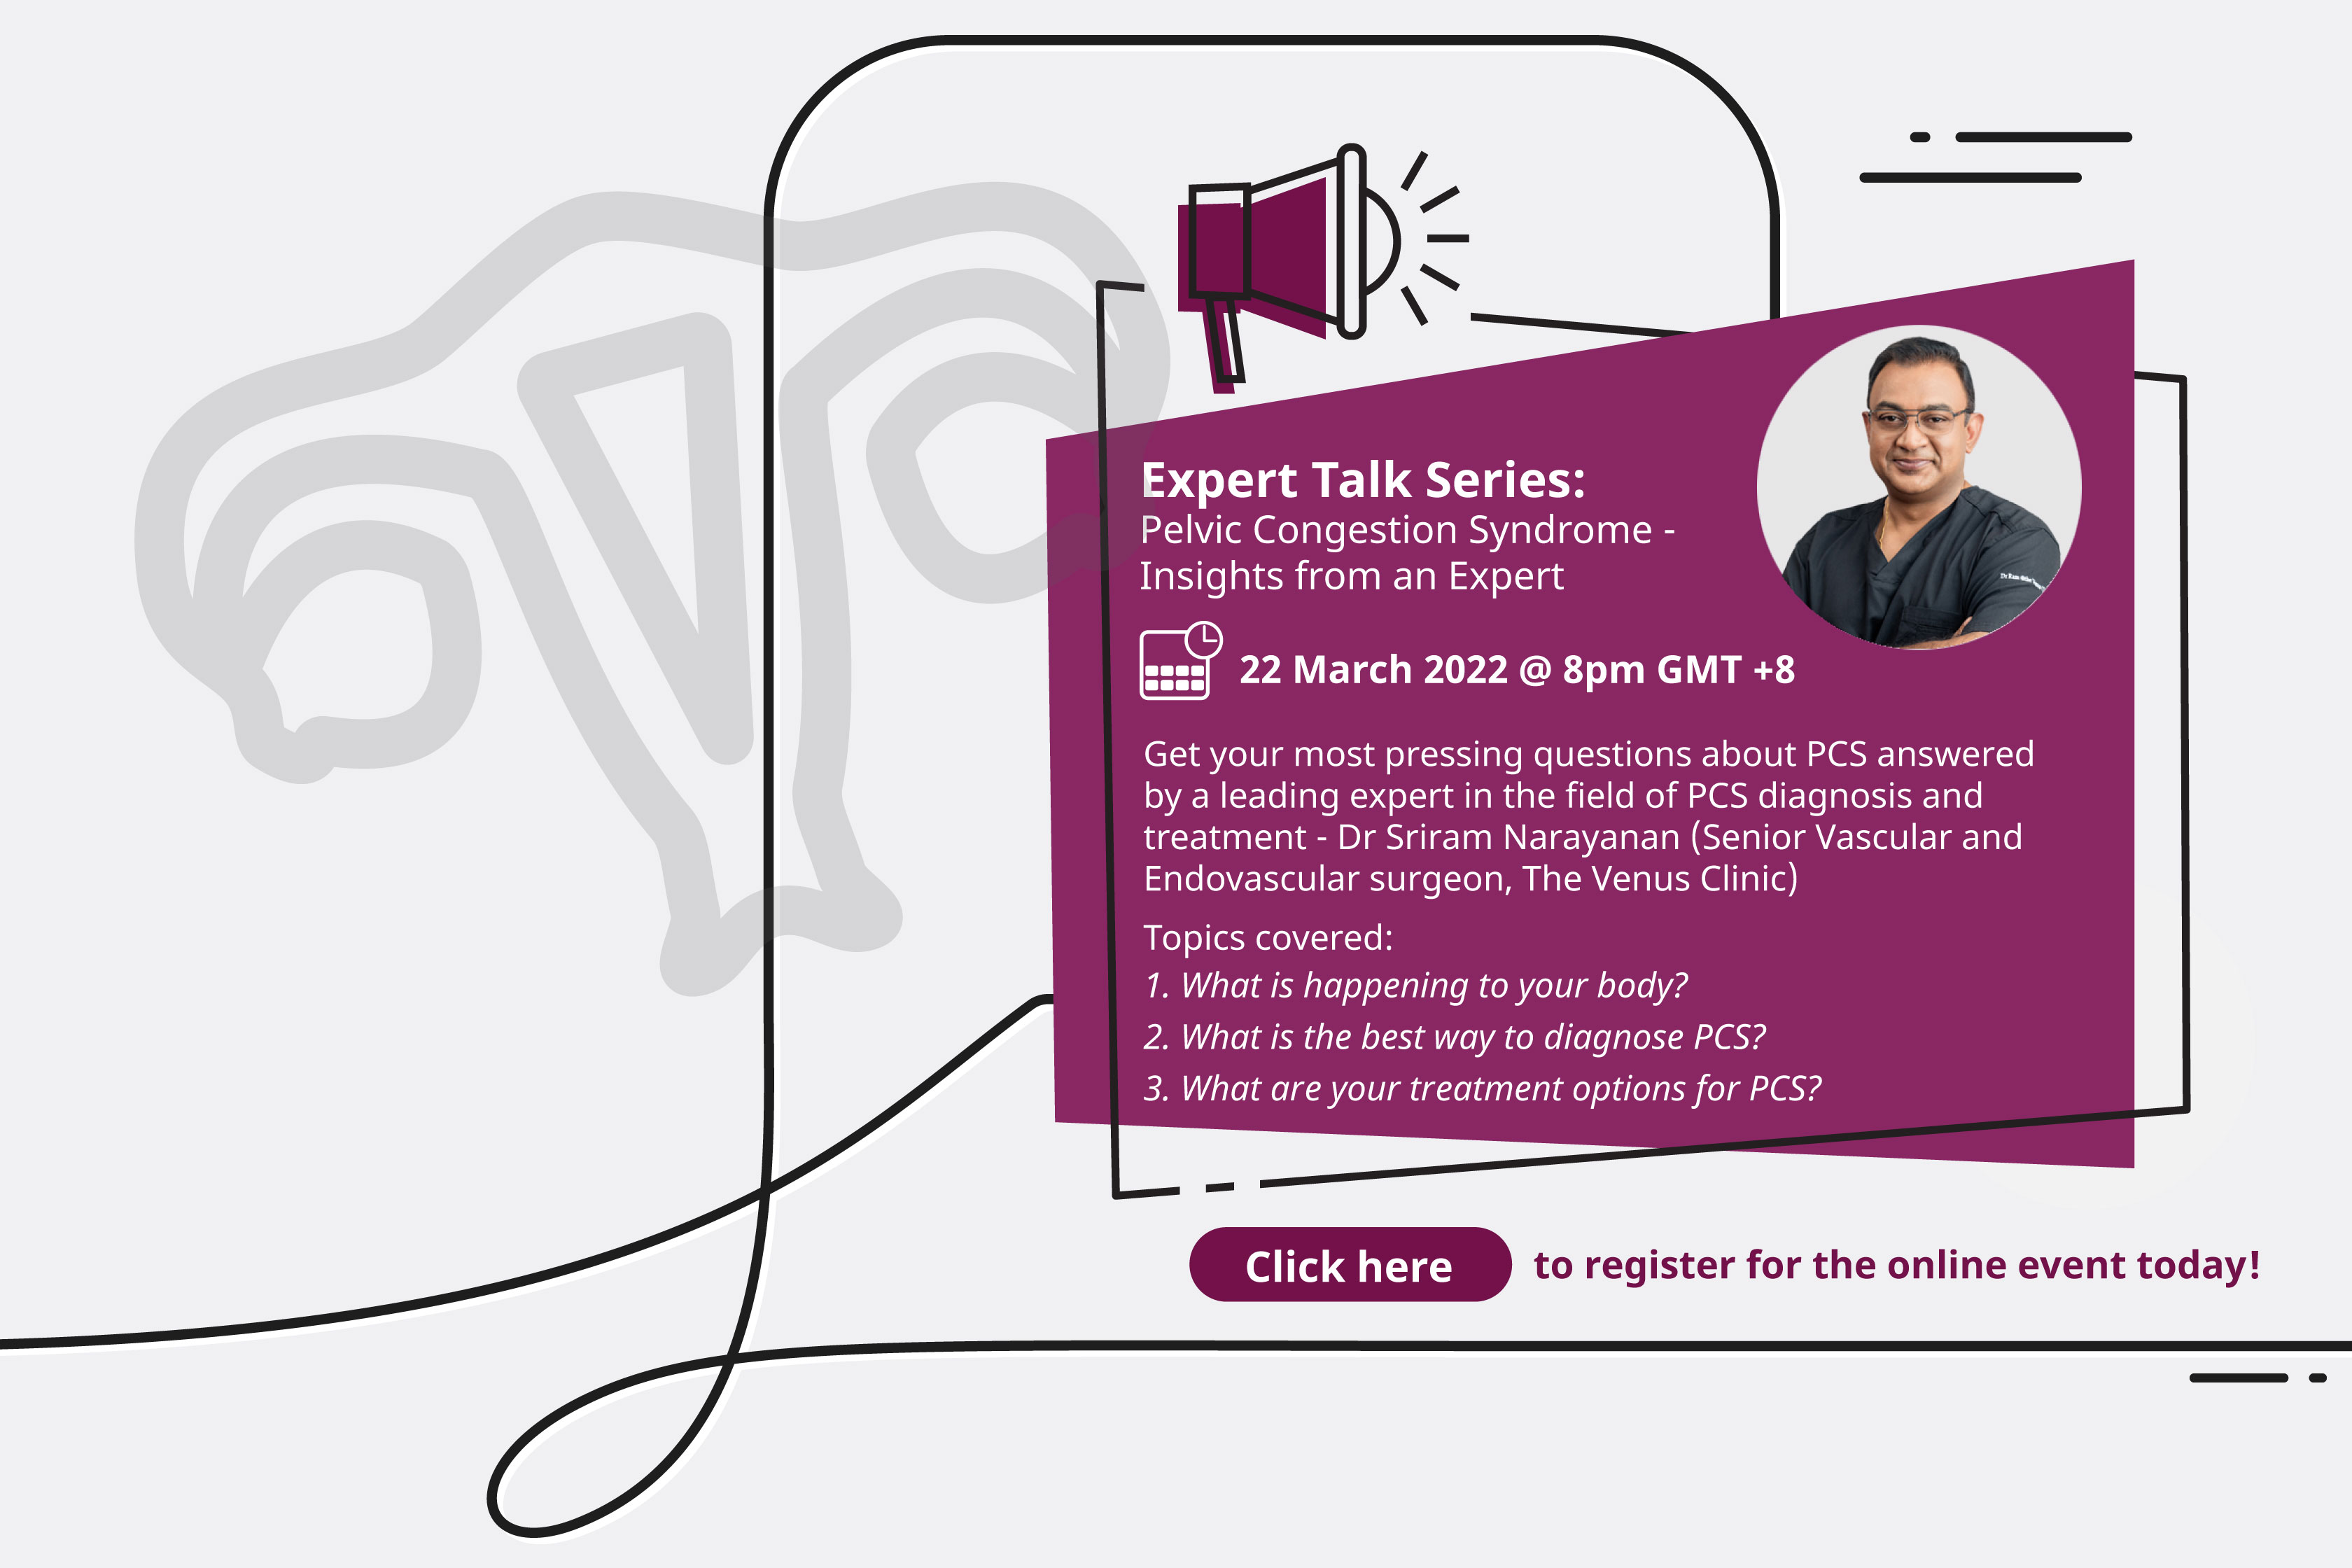 Expert Talk Series: Register Now